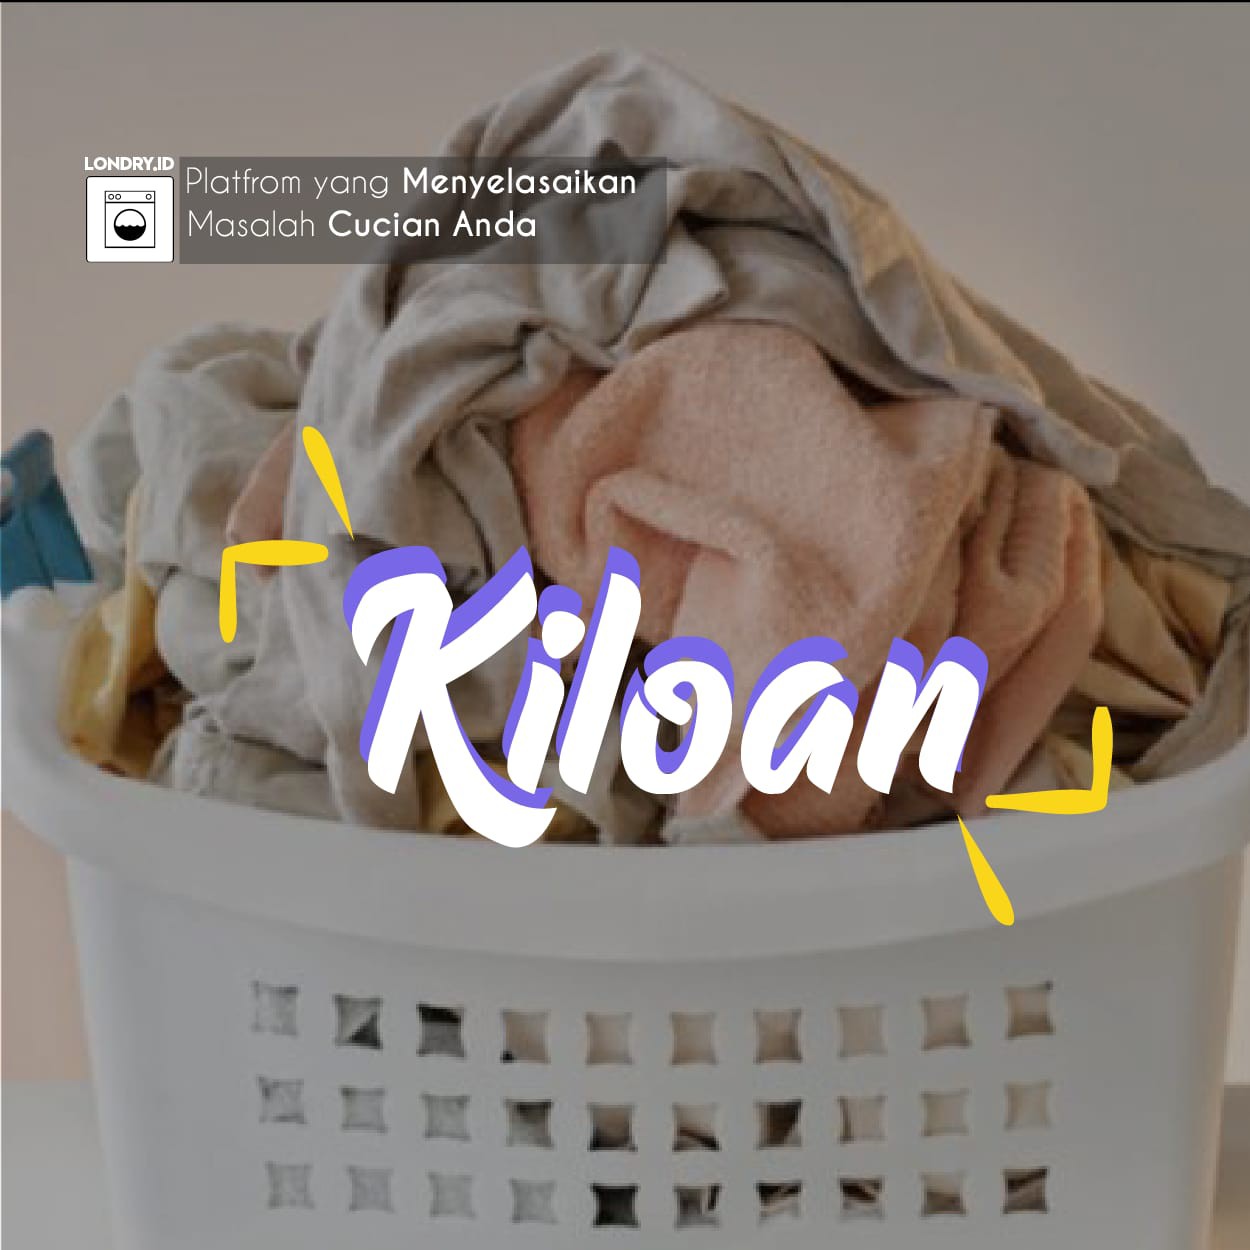 Londry Kiloan